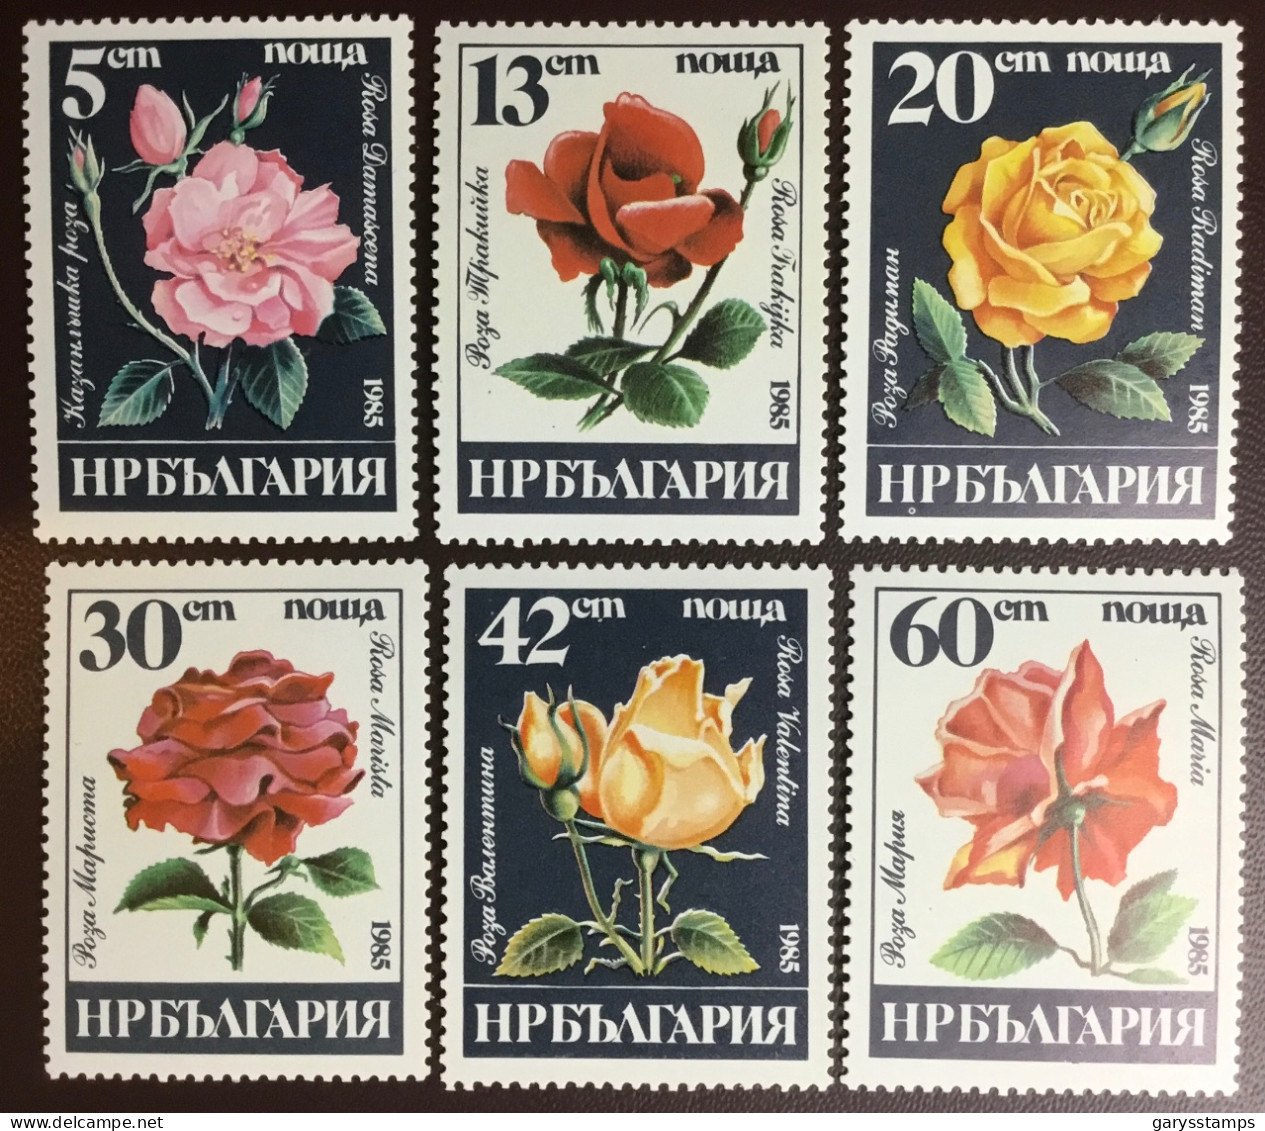 Bulgaria 1985 Roses Flowers MNH - Roses